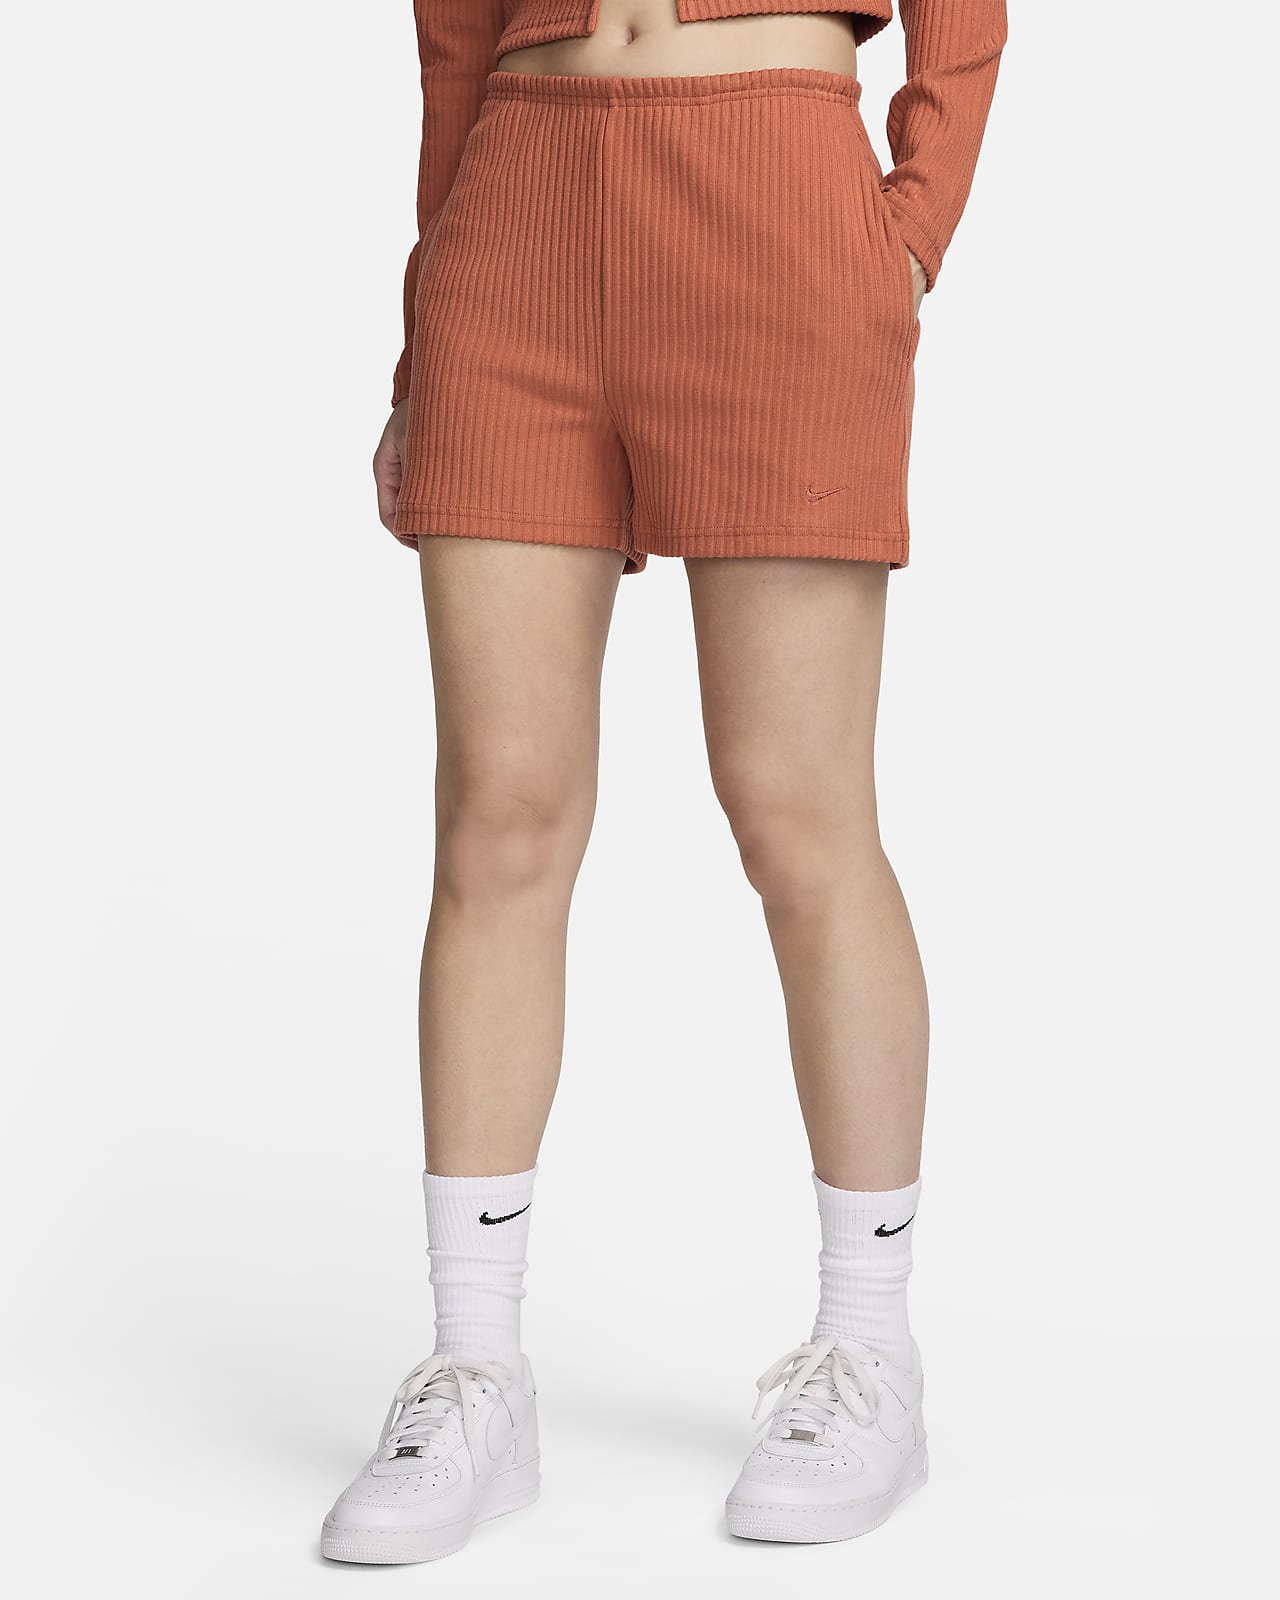 Dámské žebrované 8cm kraťasy Nike Sportswear Chill Knit v zeštíhleném střihu s vysokým pasem